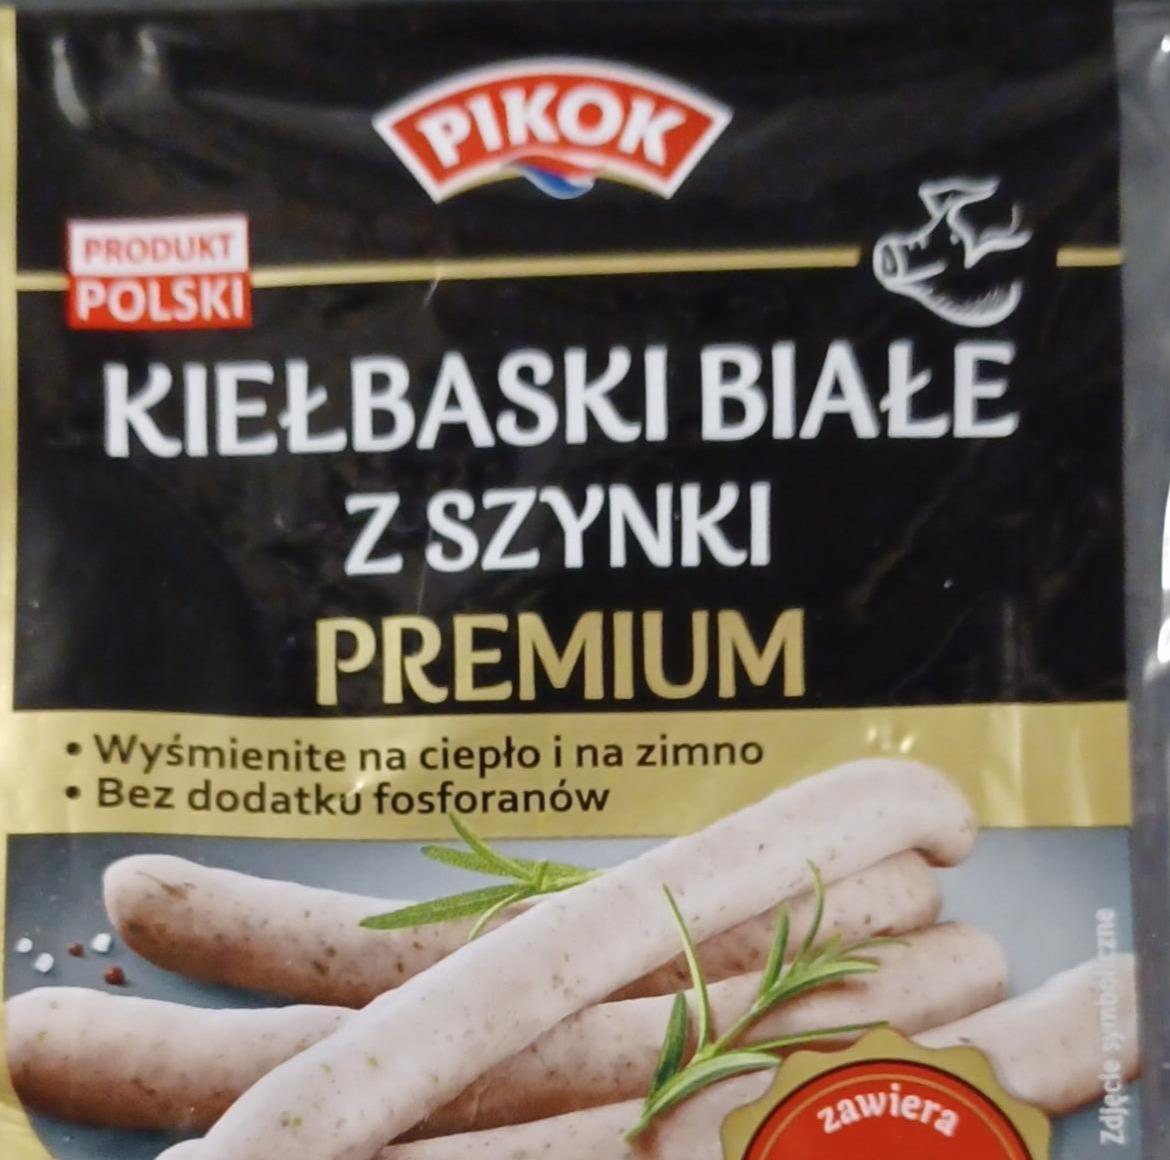 Zdjęcia - Kiełbaski białe z szynki premium Pikok